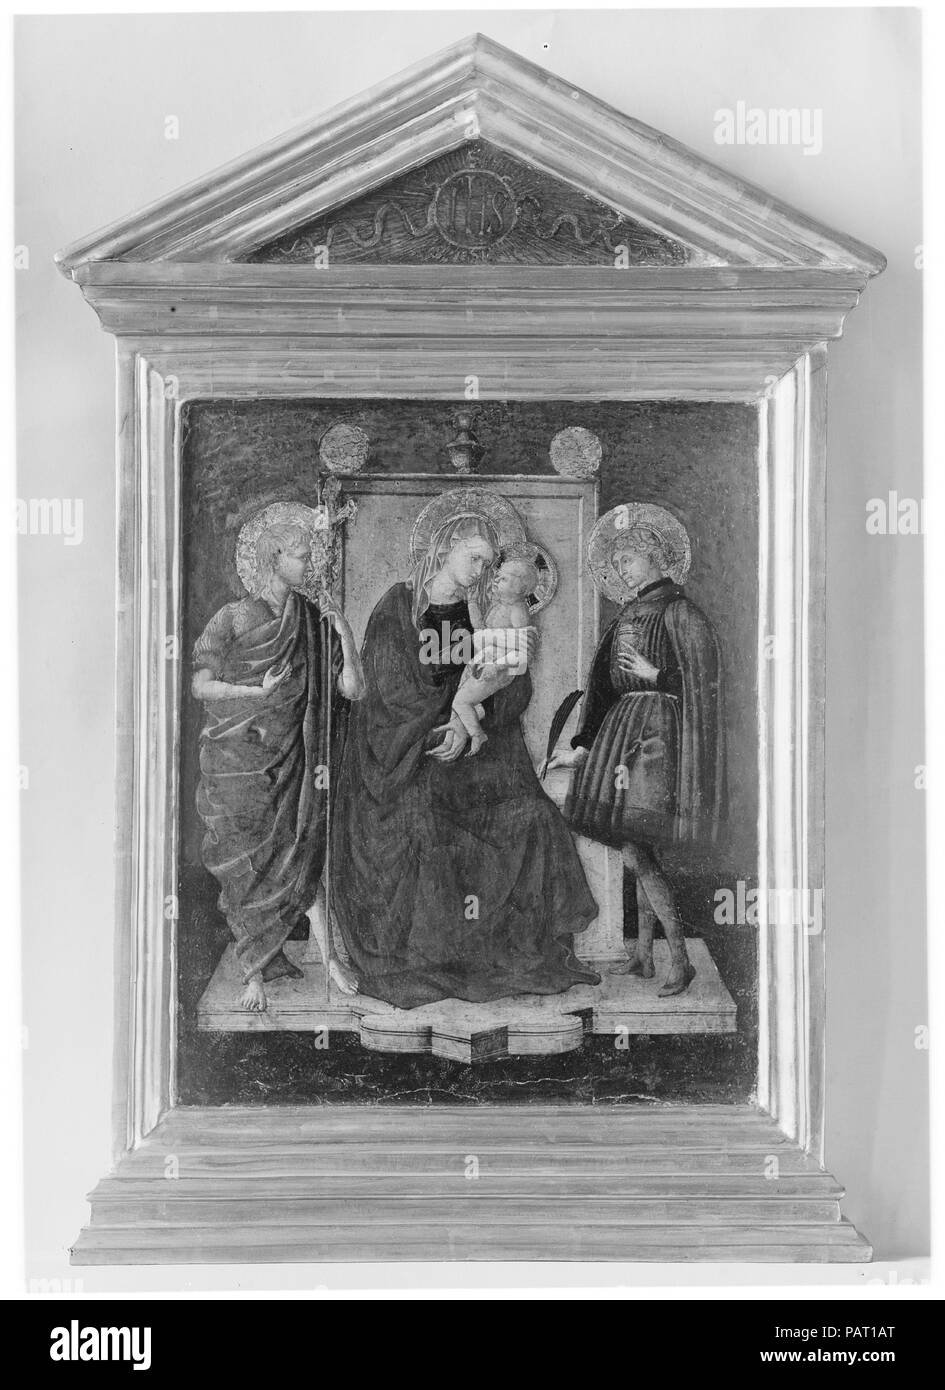 La Madone et lEnfant ont intronisé avec Saint Jean Baptiste et un autre Saint. Artiste : peintre florentin (italien) (deuxième quart 15e siècle). Dimensions : hors tout, avec cadre, 29 3/4 x 17 1/8 in. (75,6 x 43,5 cm) ; surface peinte 17 1/8 x 14 1/4 in. (43,5 x 36,2 cm). En dépit de son mauvais état général, c'est un travail d'intérêt considérable. La pose de la Vierge et l'enfant sont particulièrement inventifs. La photo a été à un temps attribué à Pesellino, mais il a aussi été estimé qu'une proximité de travail siennois Domenico di Bartolo. C'est probablement autour de 1440 dates et Florentine. La marp Banque D'Images